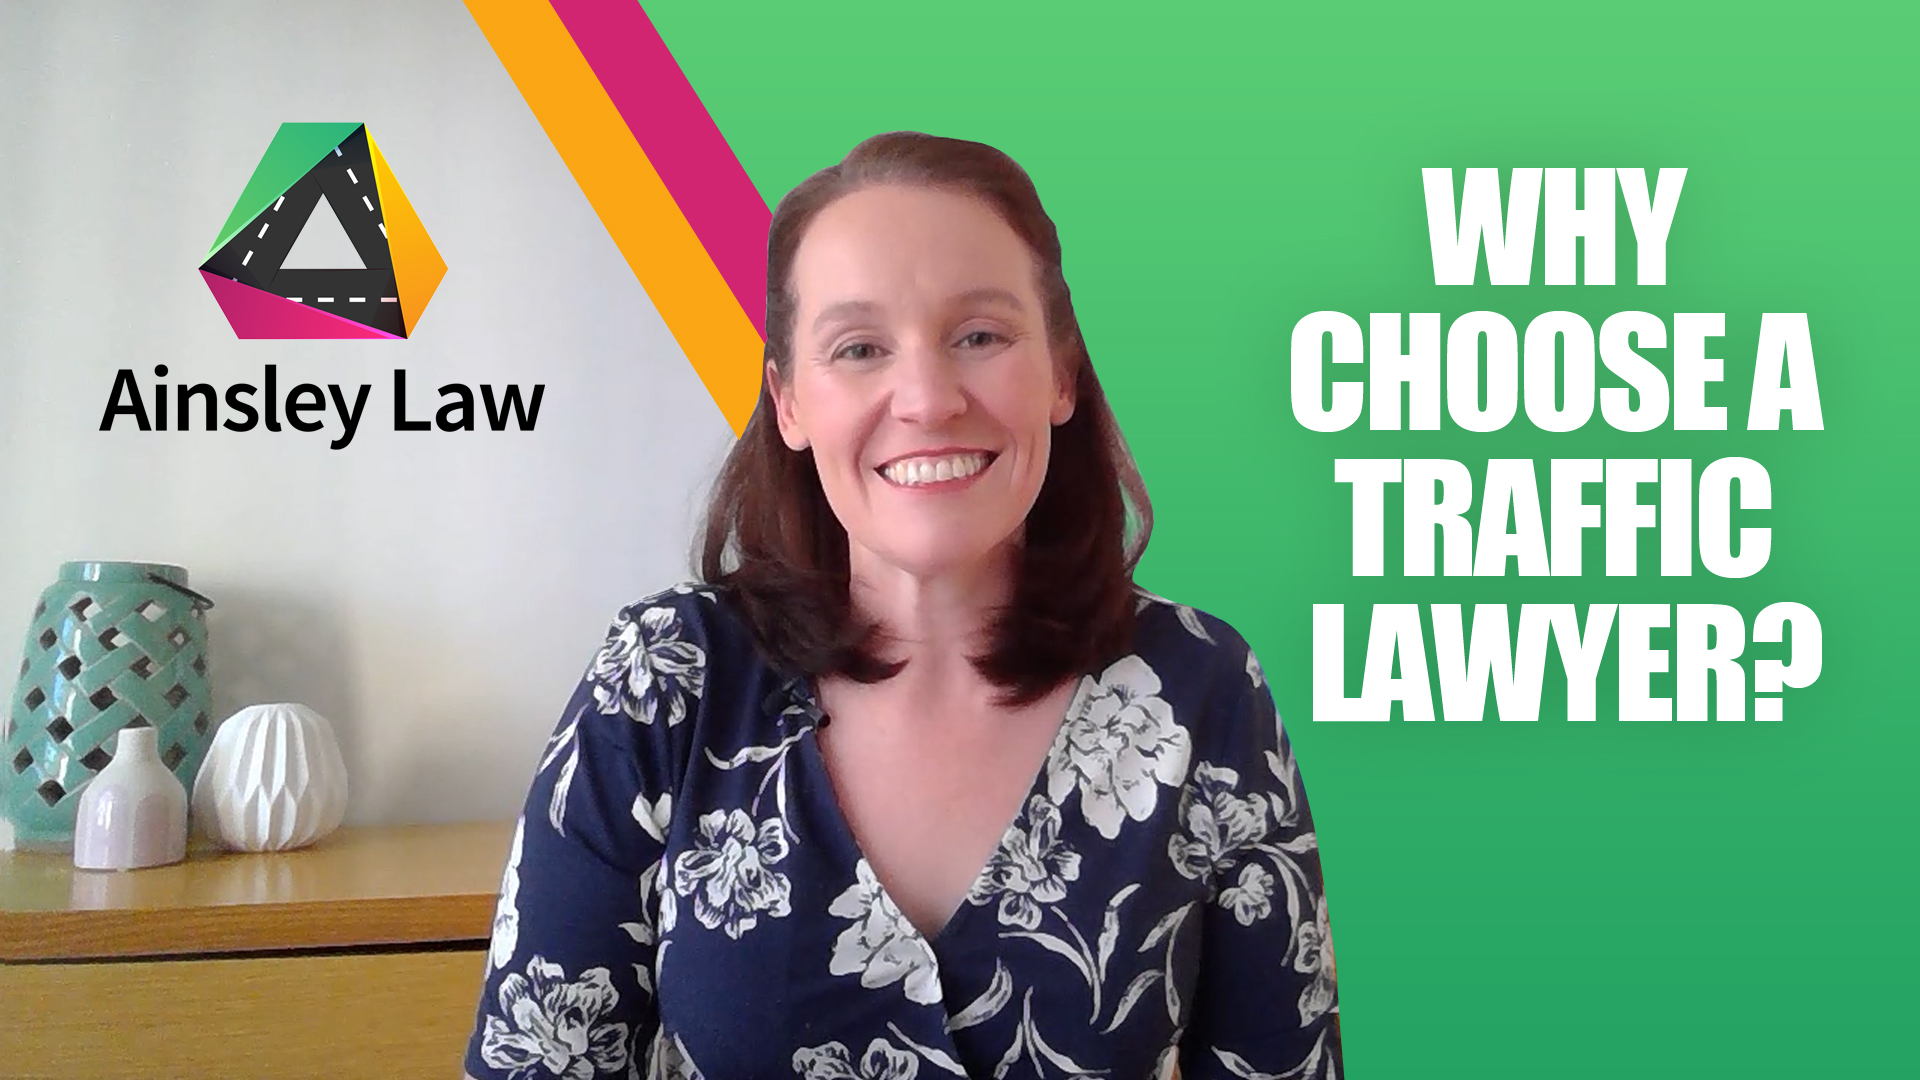 Why Choose A Traffic Lawyer?